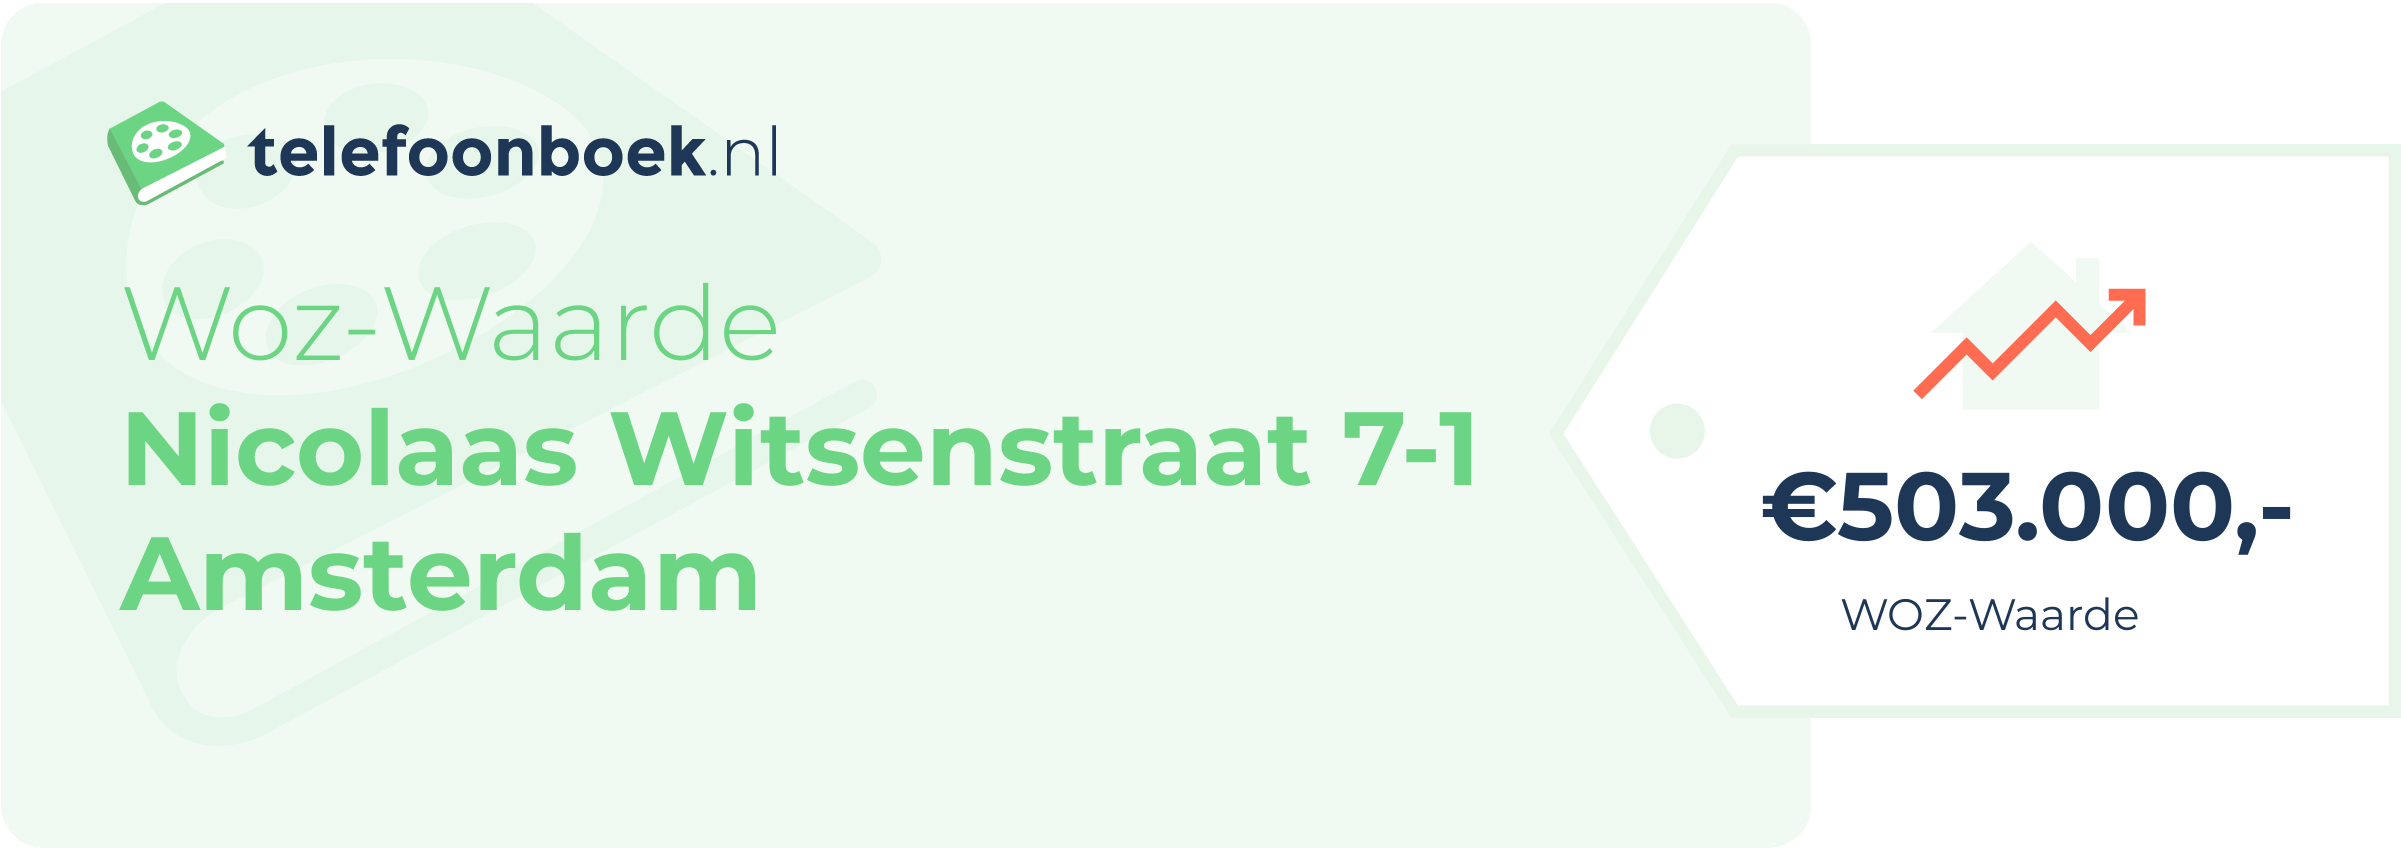 WOZ-waarde Nicolaas Witsenstraat 7-1 Amsterdam